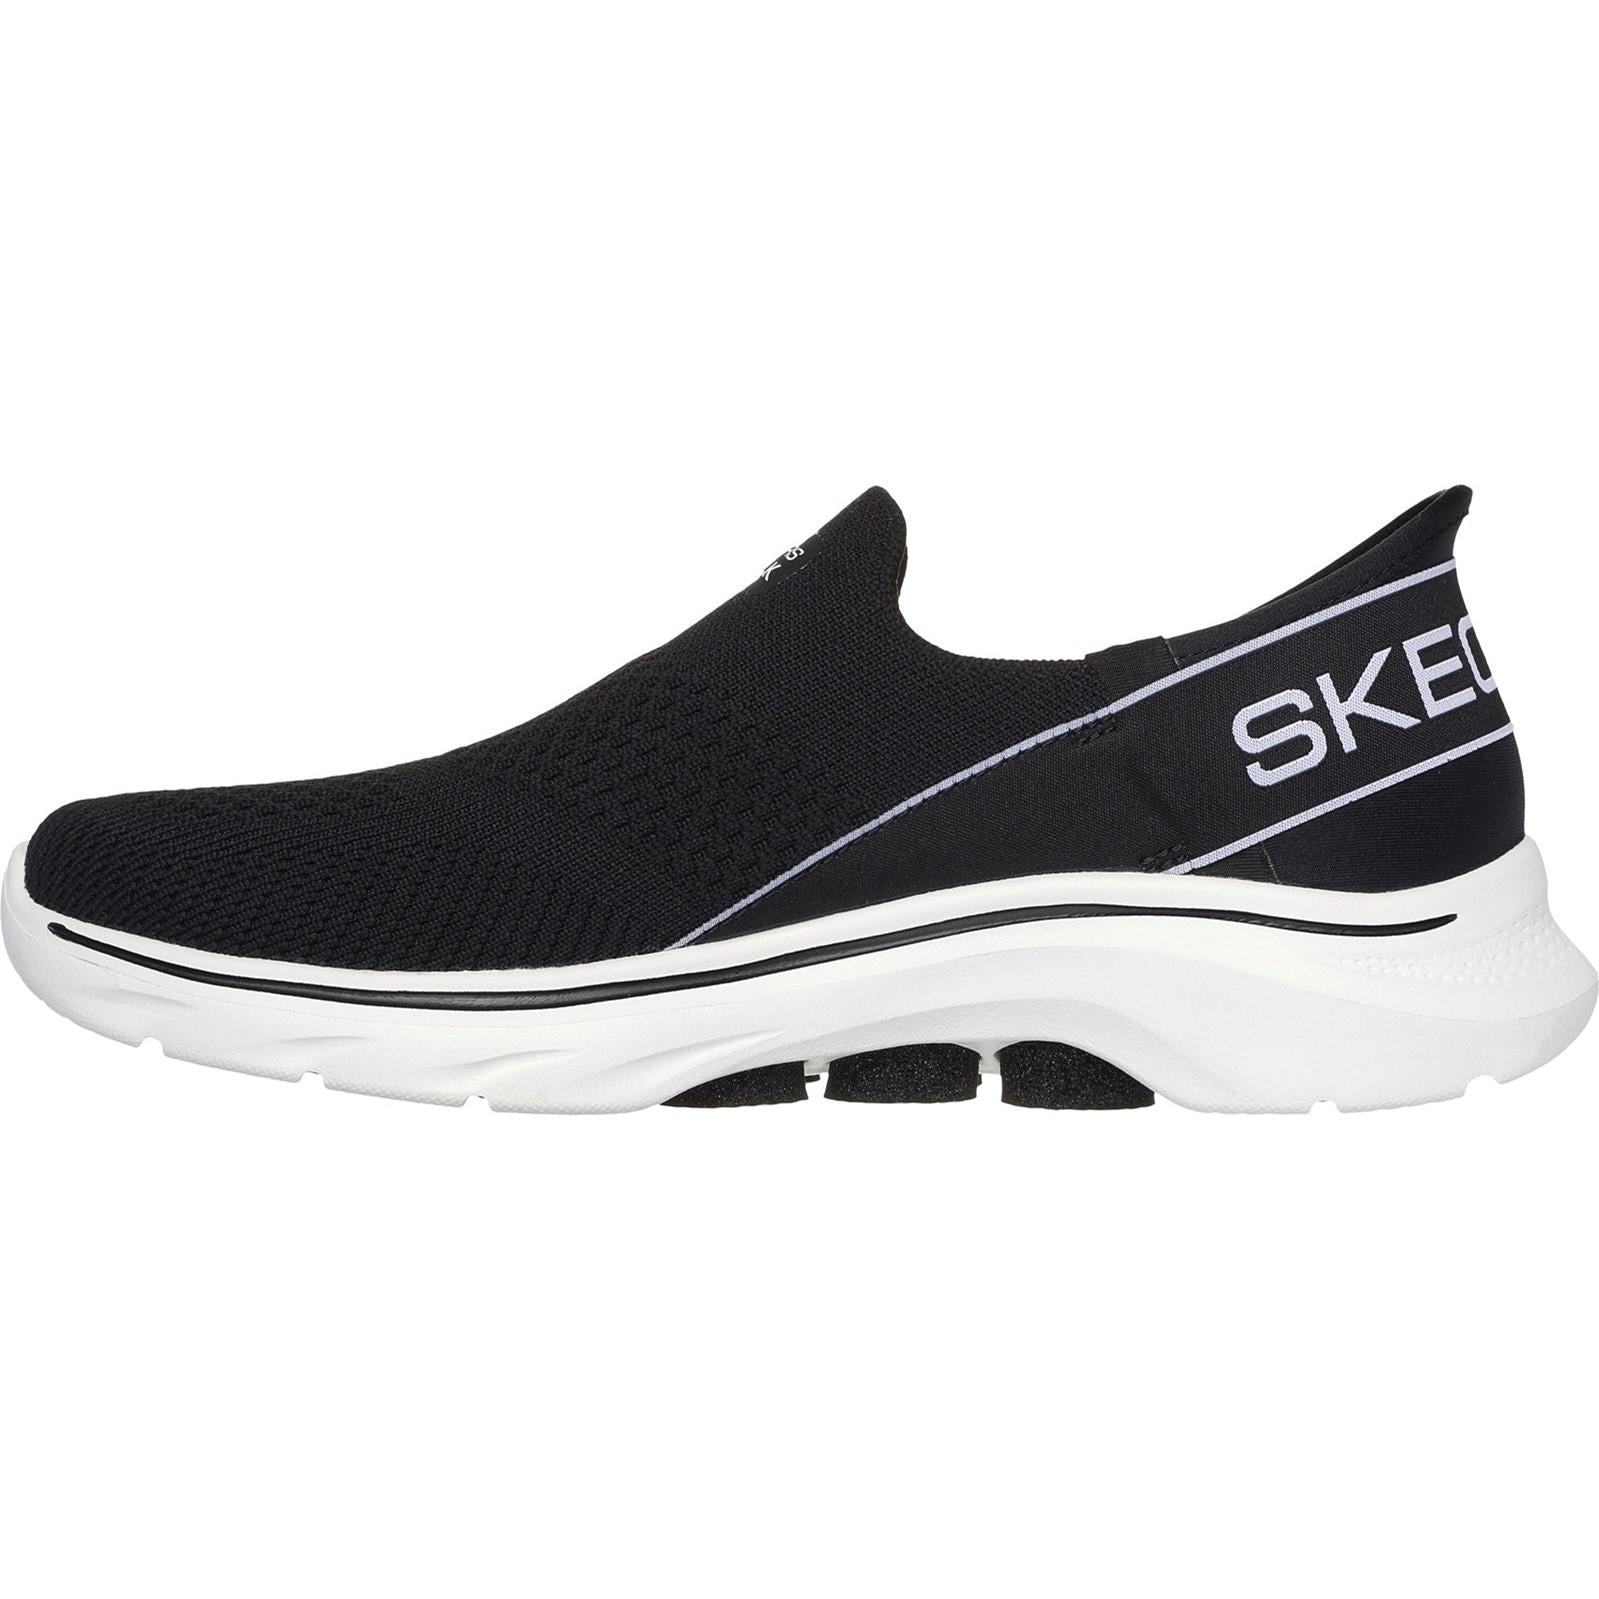 Skechers GO WALK 7 - Mia Shoe